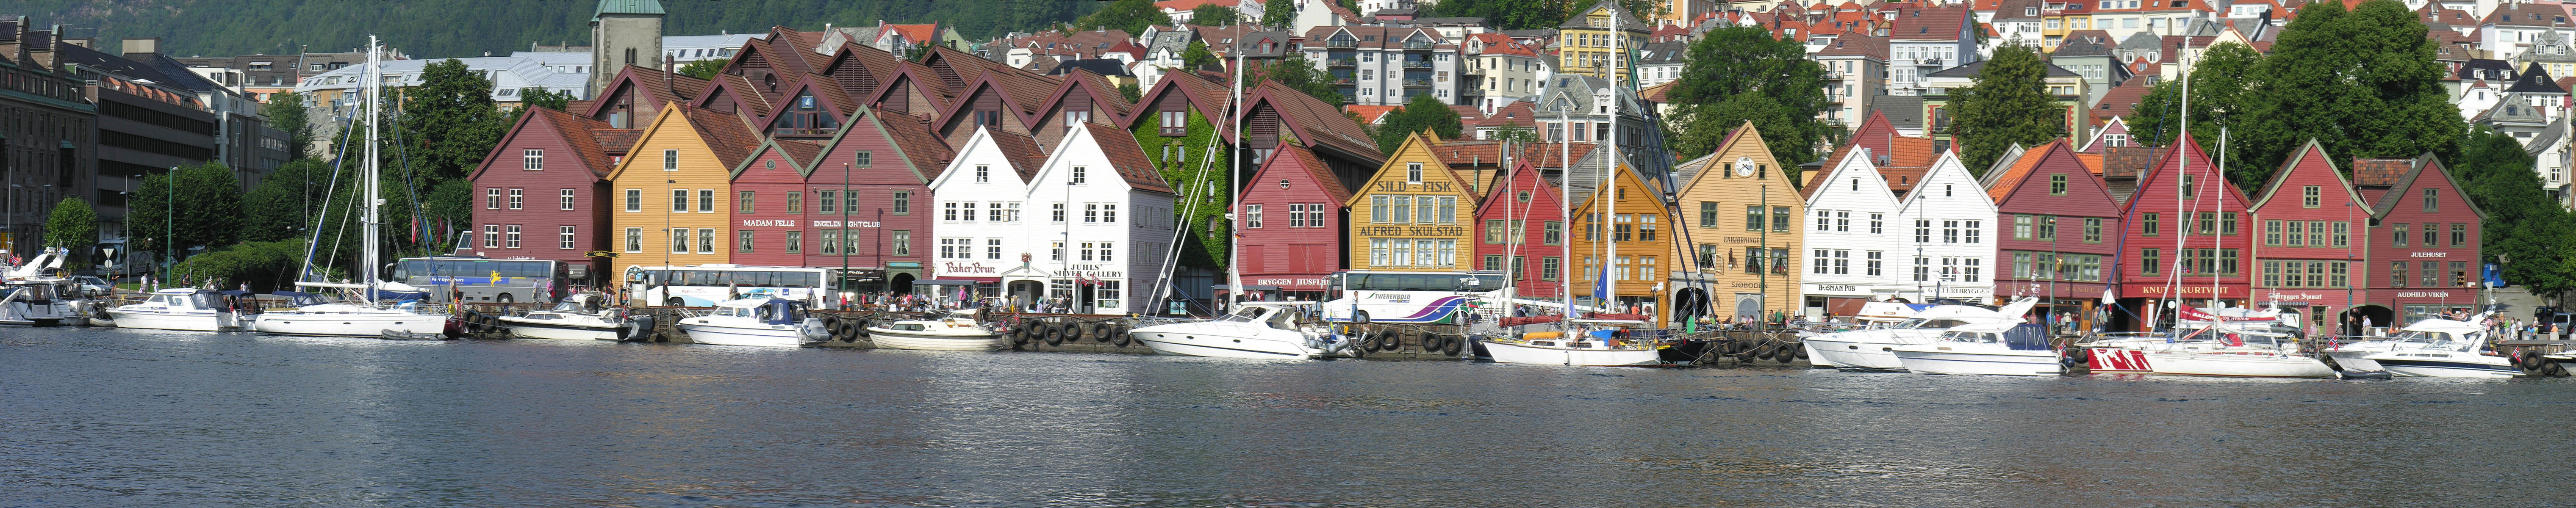 Bergen - Norway3.jpg